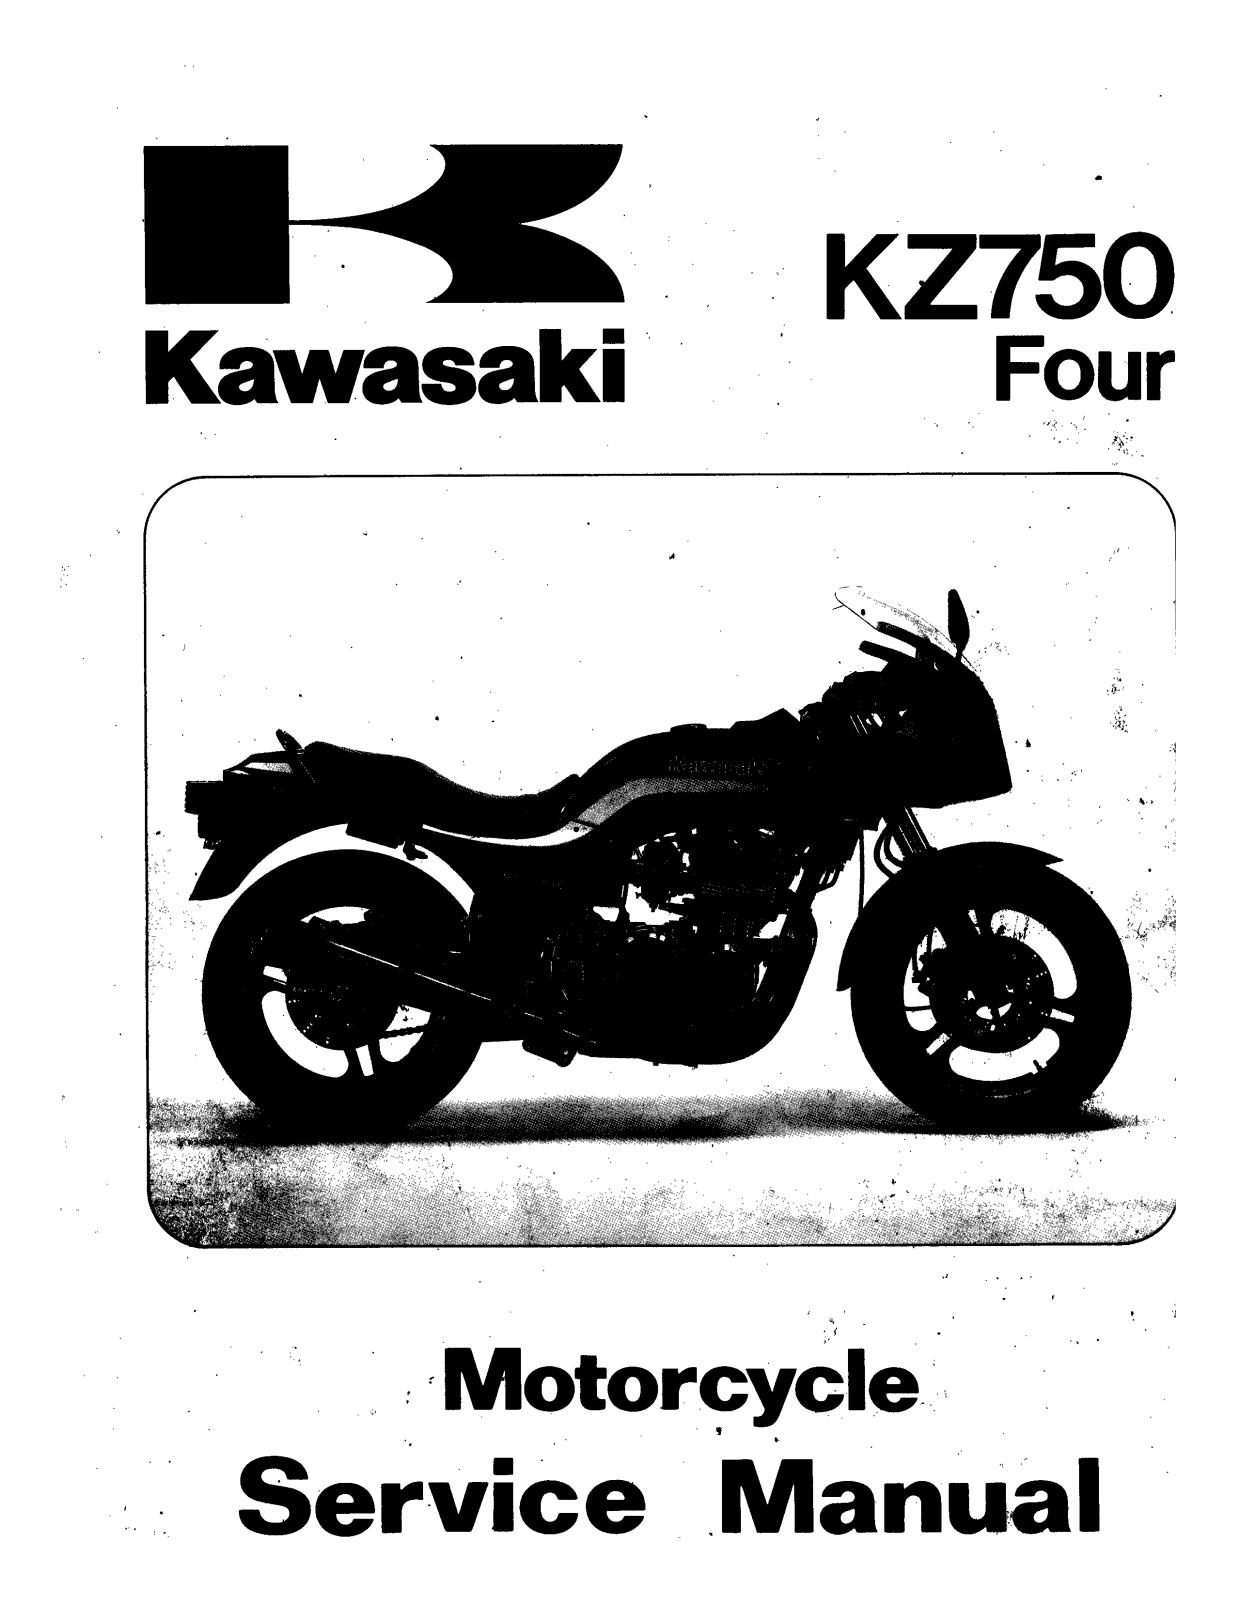 Kawasaki Kz750 Four, Kz750 Service Manual